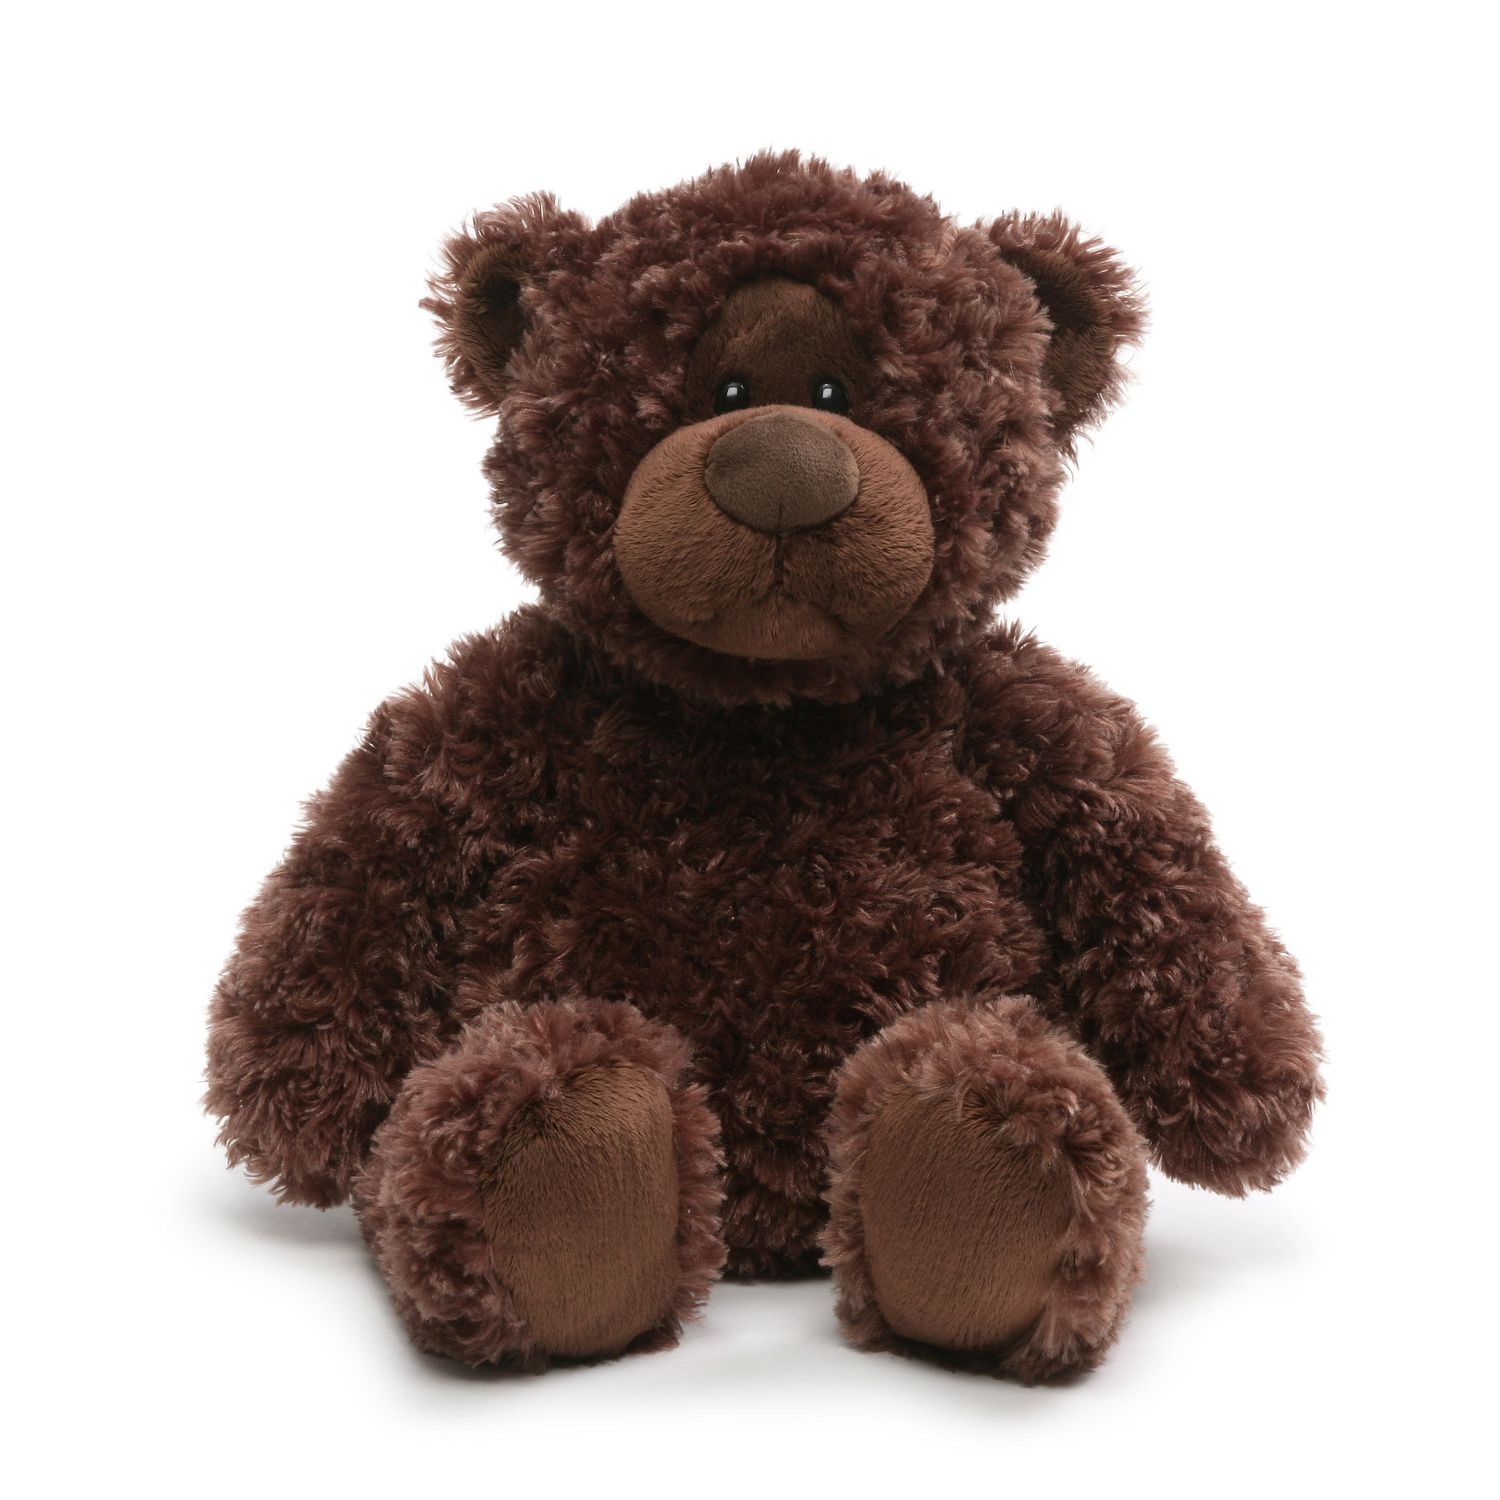 A brown teddy bear. Тедди Браун. Биг Тедди. Мягкая игрушка Gund Peyton Teddy. Tata Cat Choco Teddy.